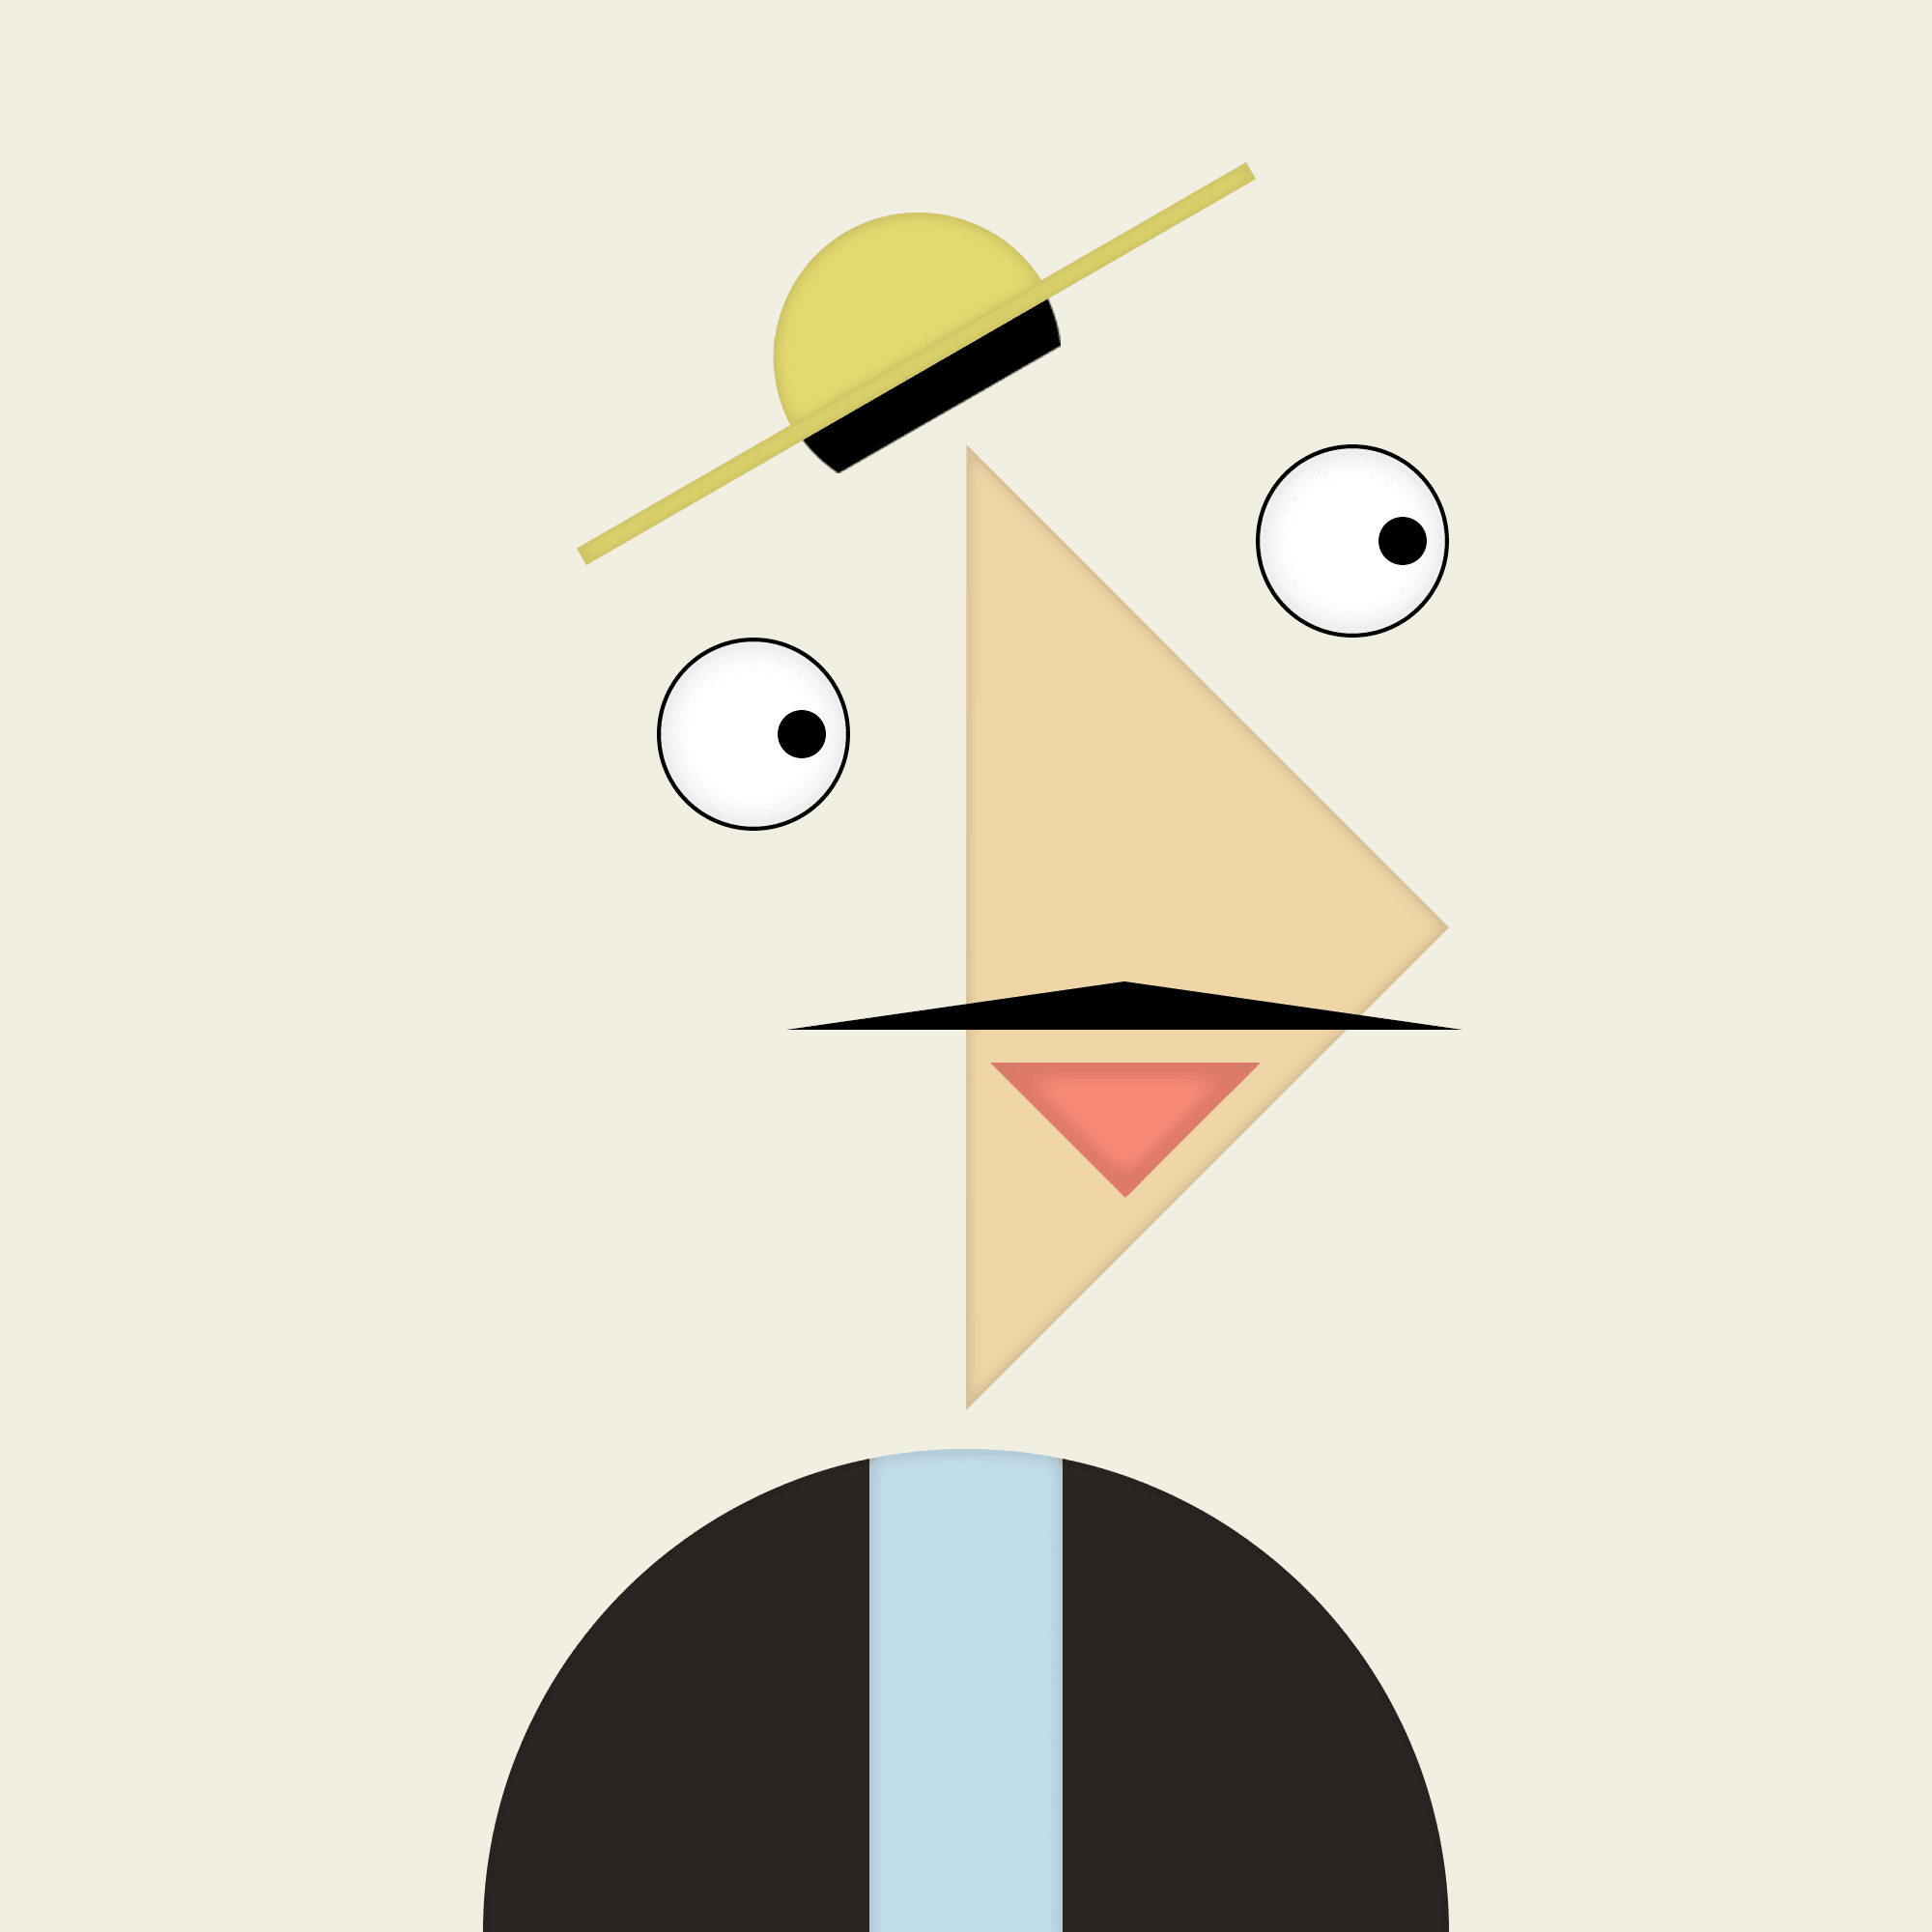 Gentleman in a straw hat